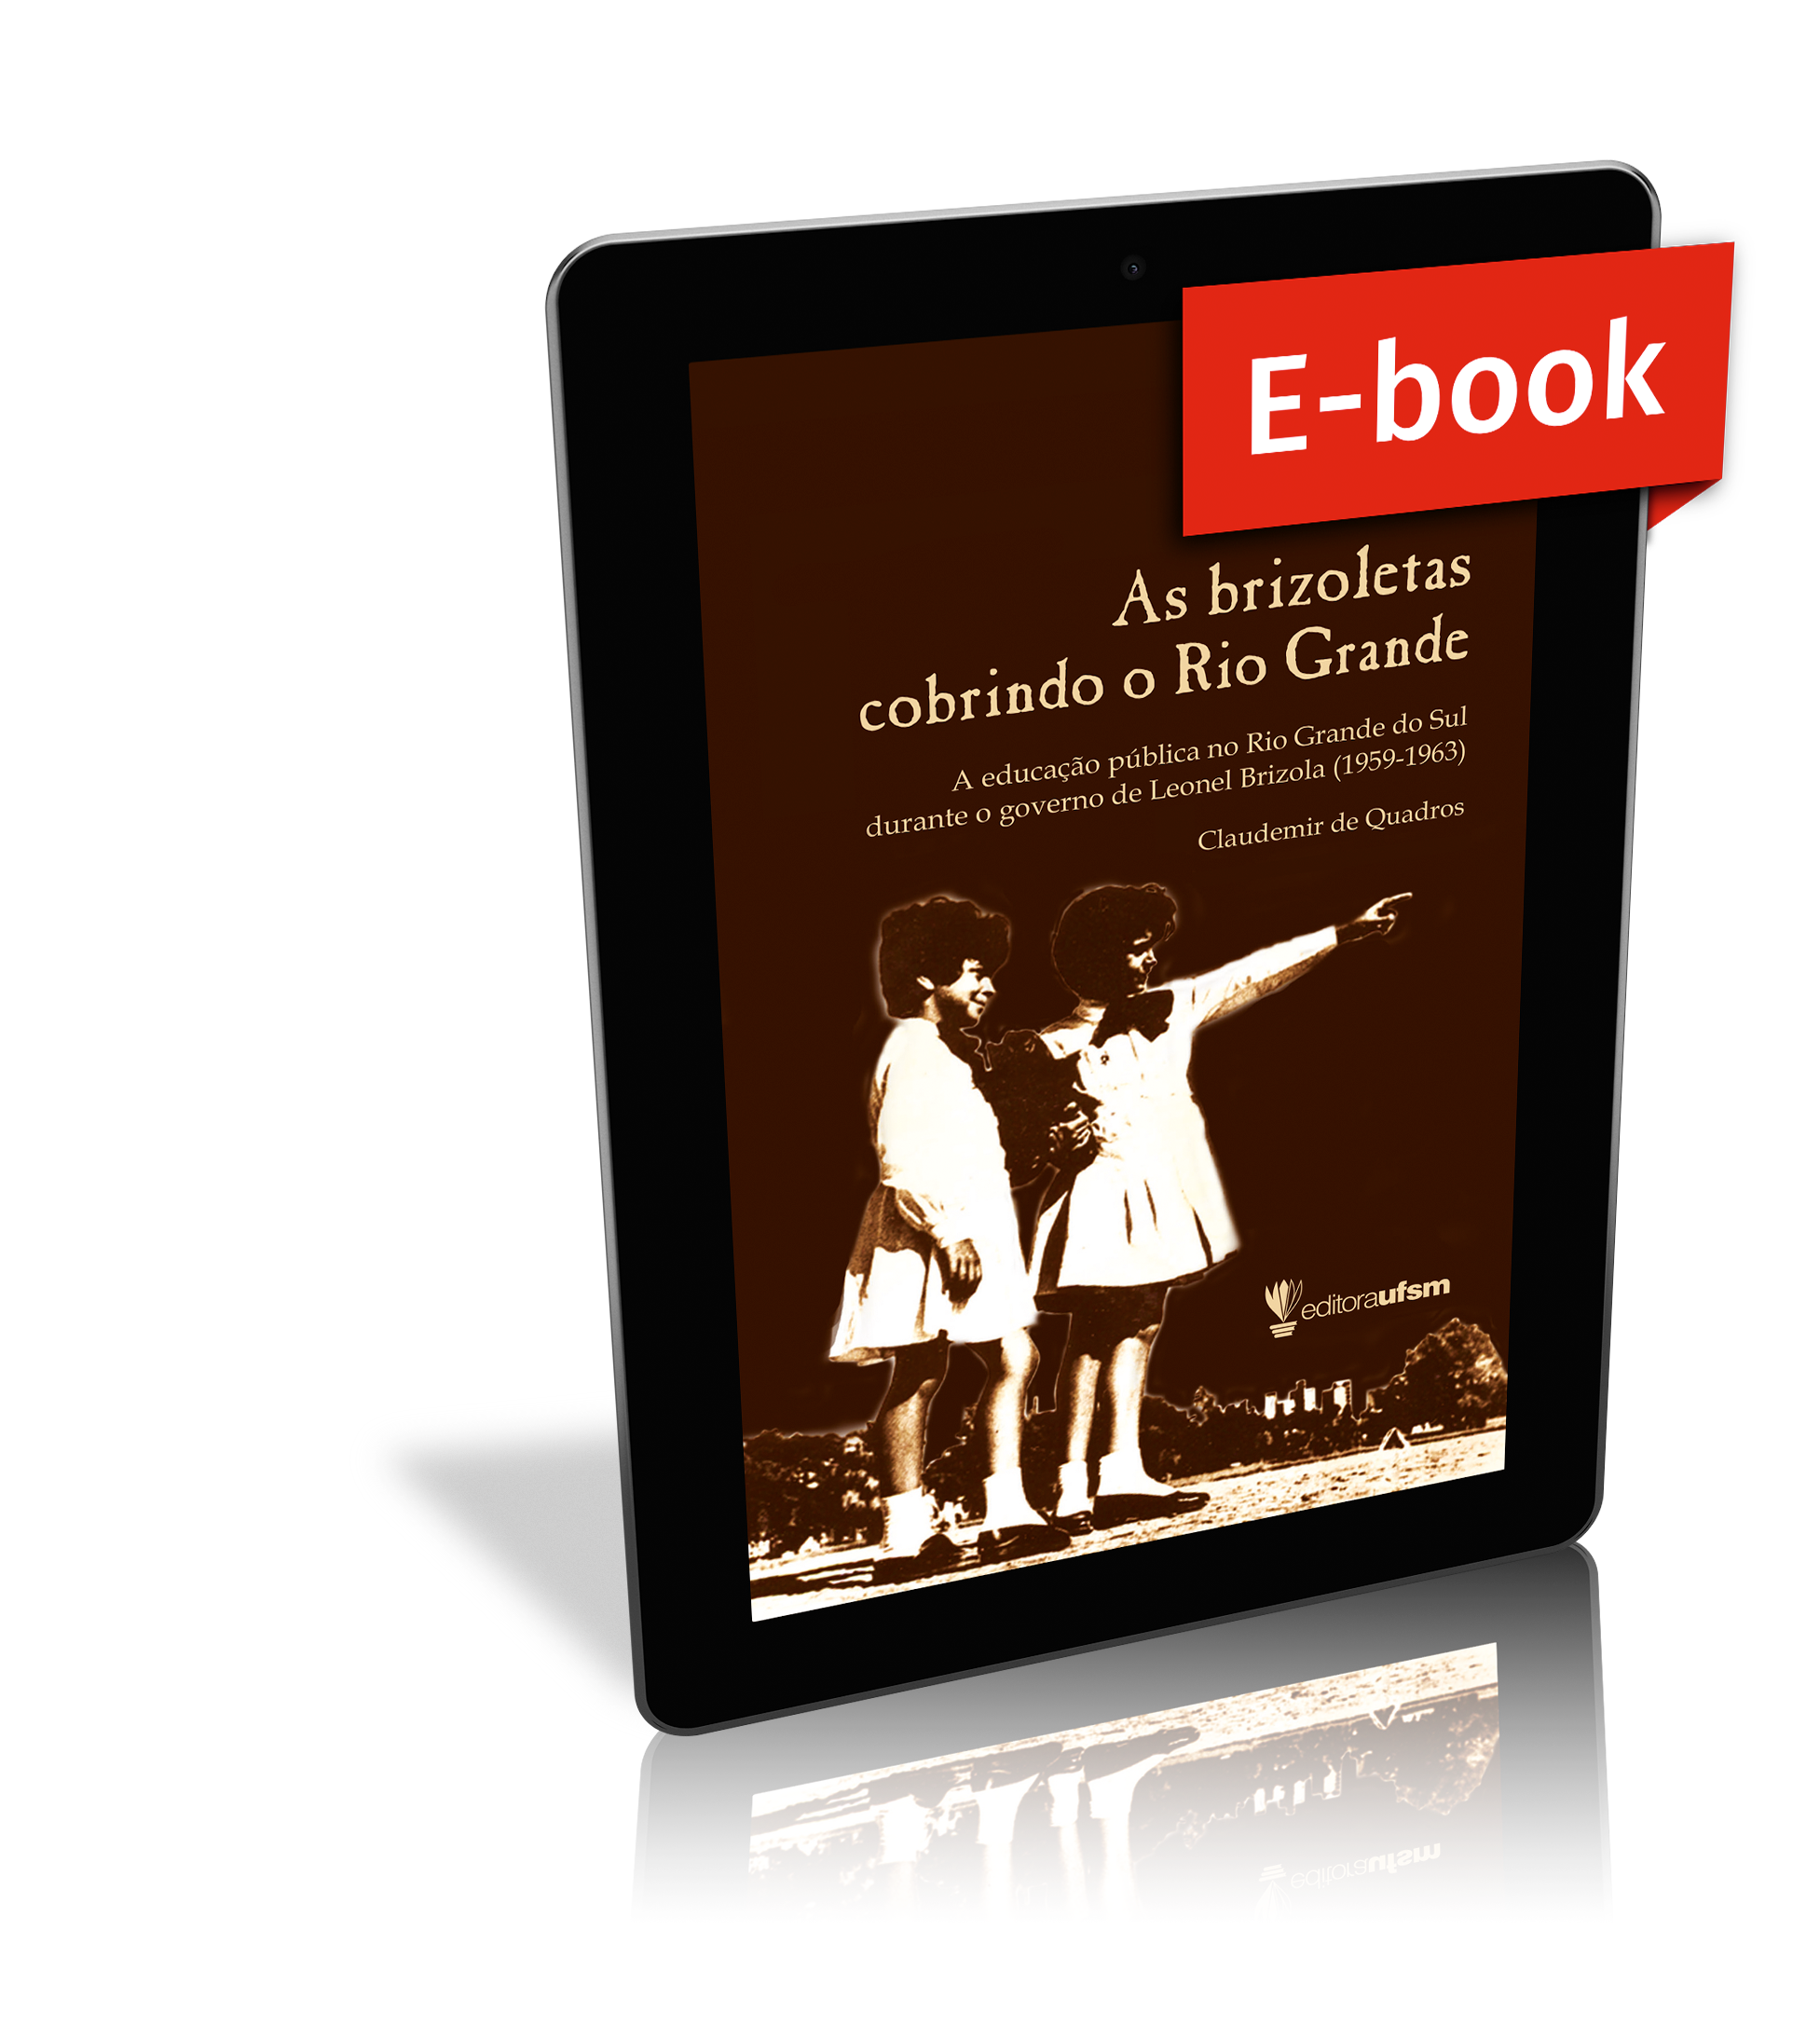 Capa do ebook As brizoletas cobrindo o Rio Grande: A educação pública no Rio Grande do Sul durante o governo de Leonel Brizola (1959-1963)